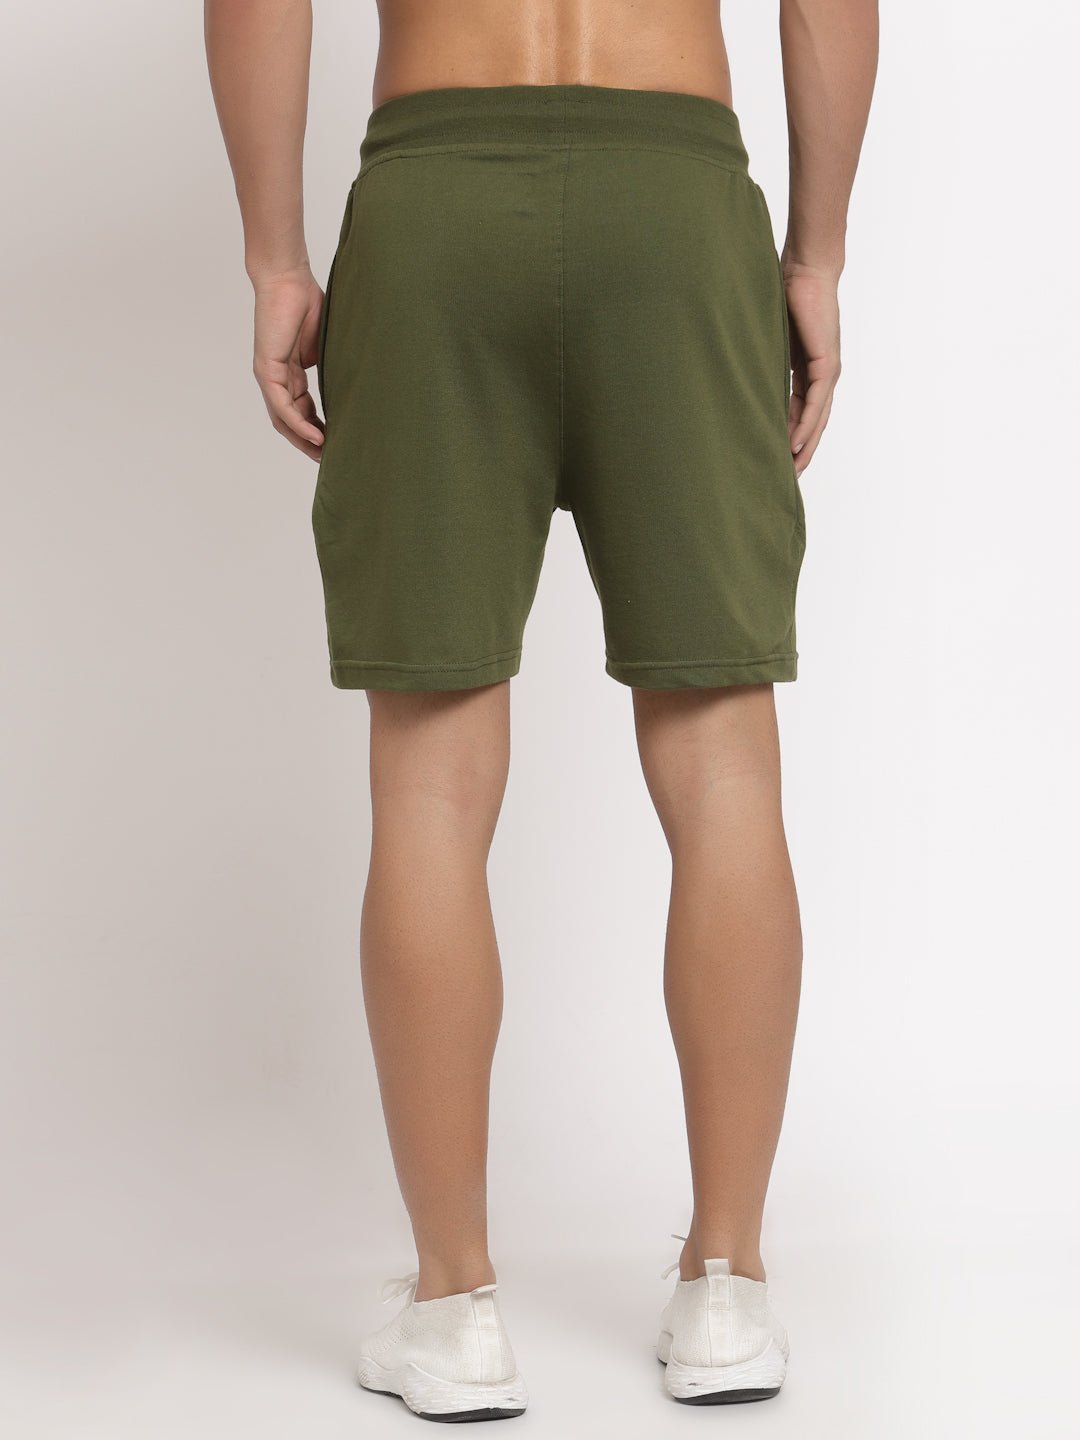 Olive Shorts - clubyork